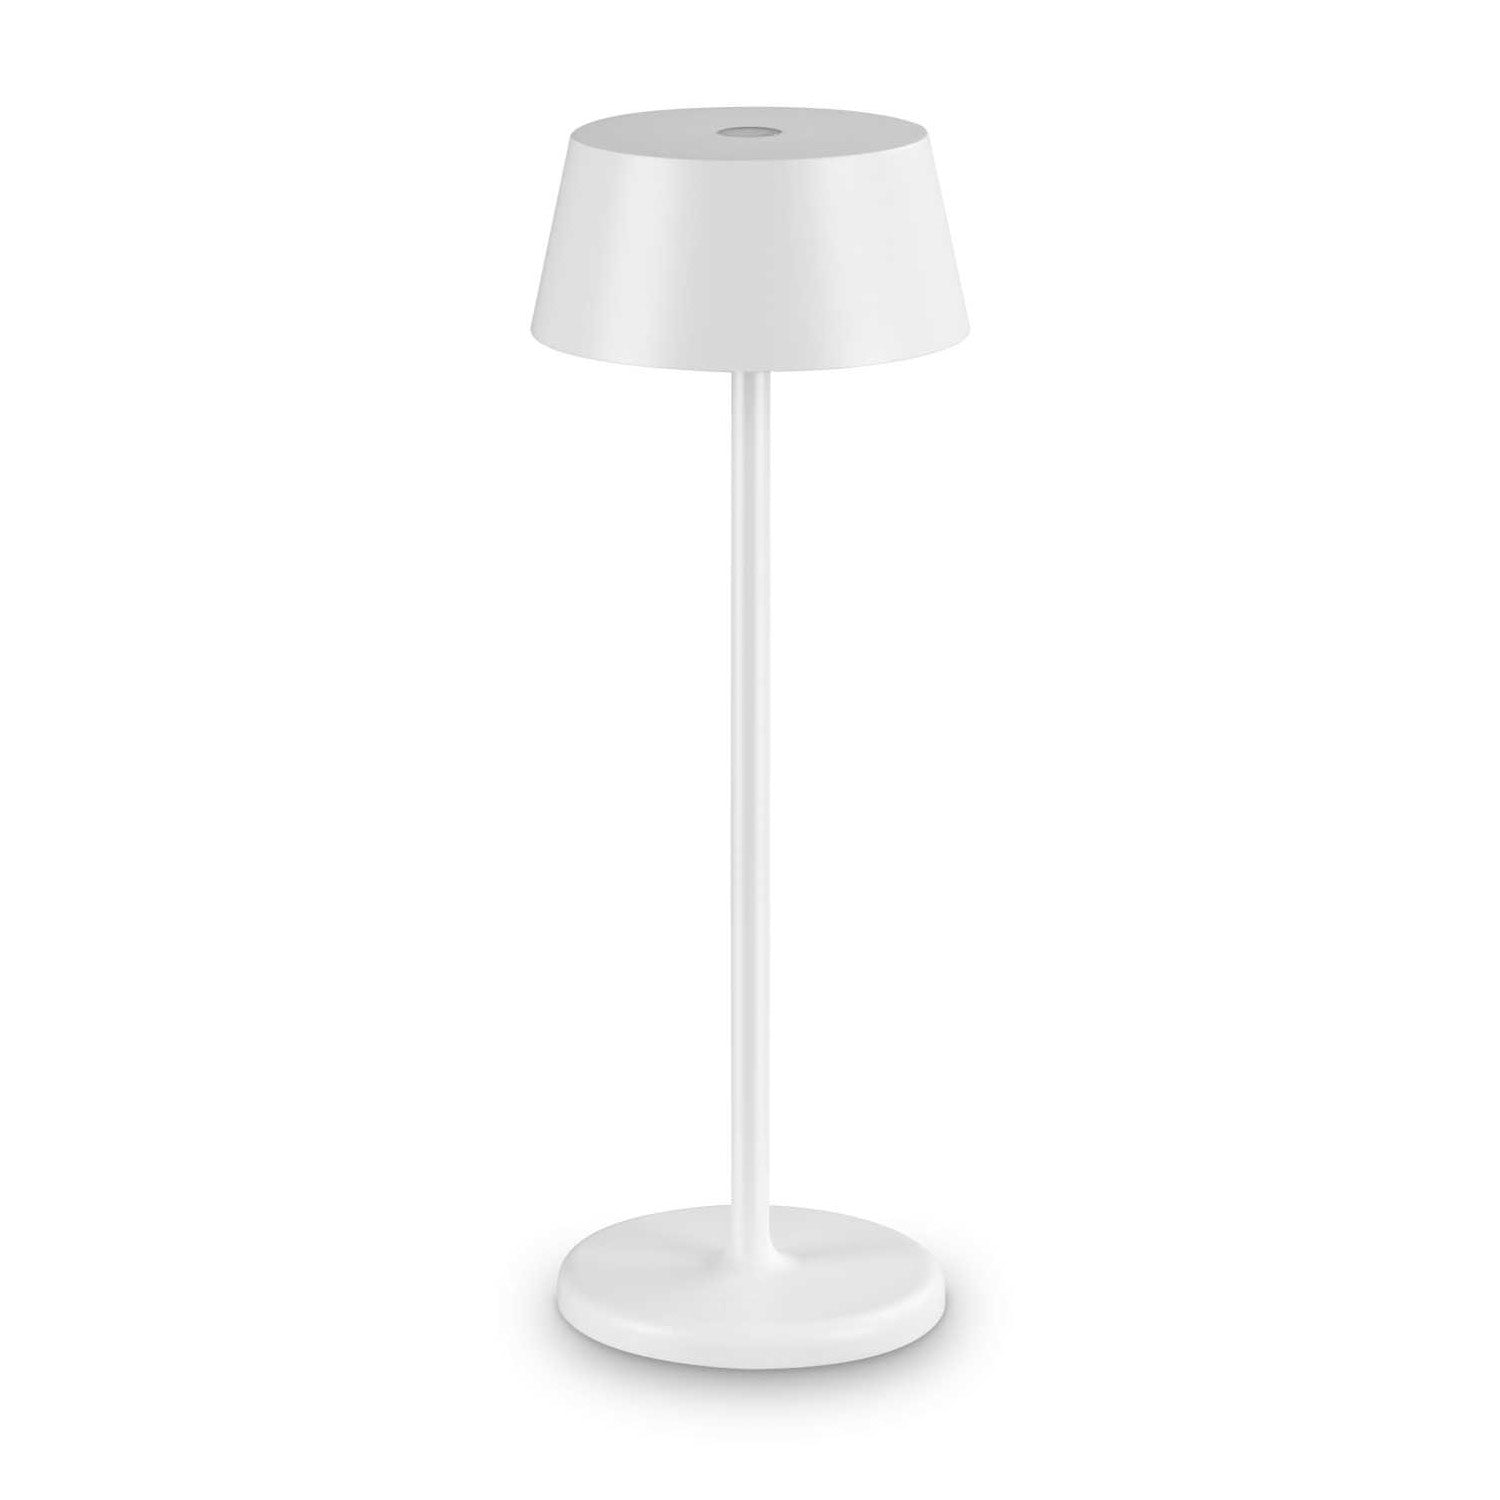 PURE - Lampe nomade design et étanche IP54